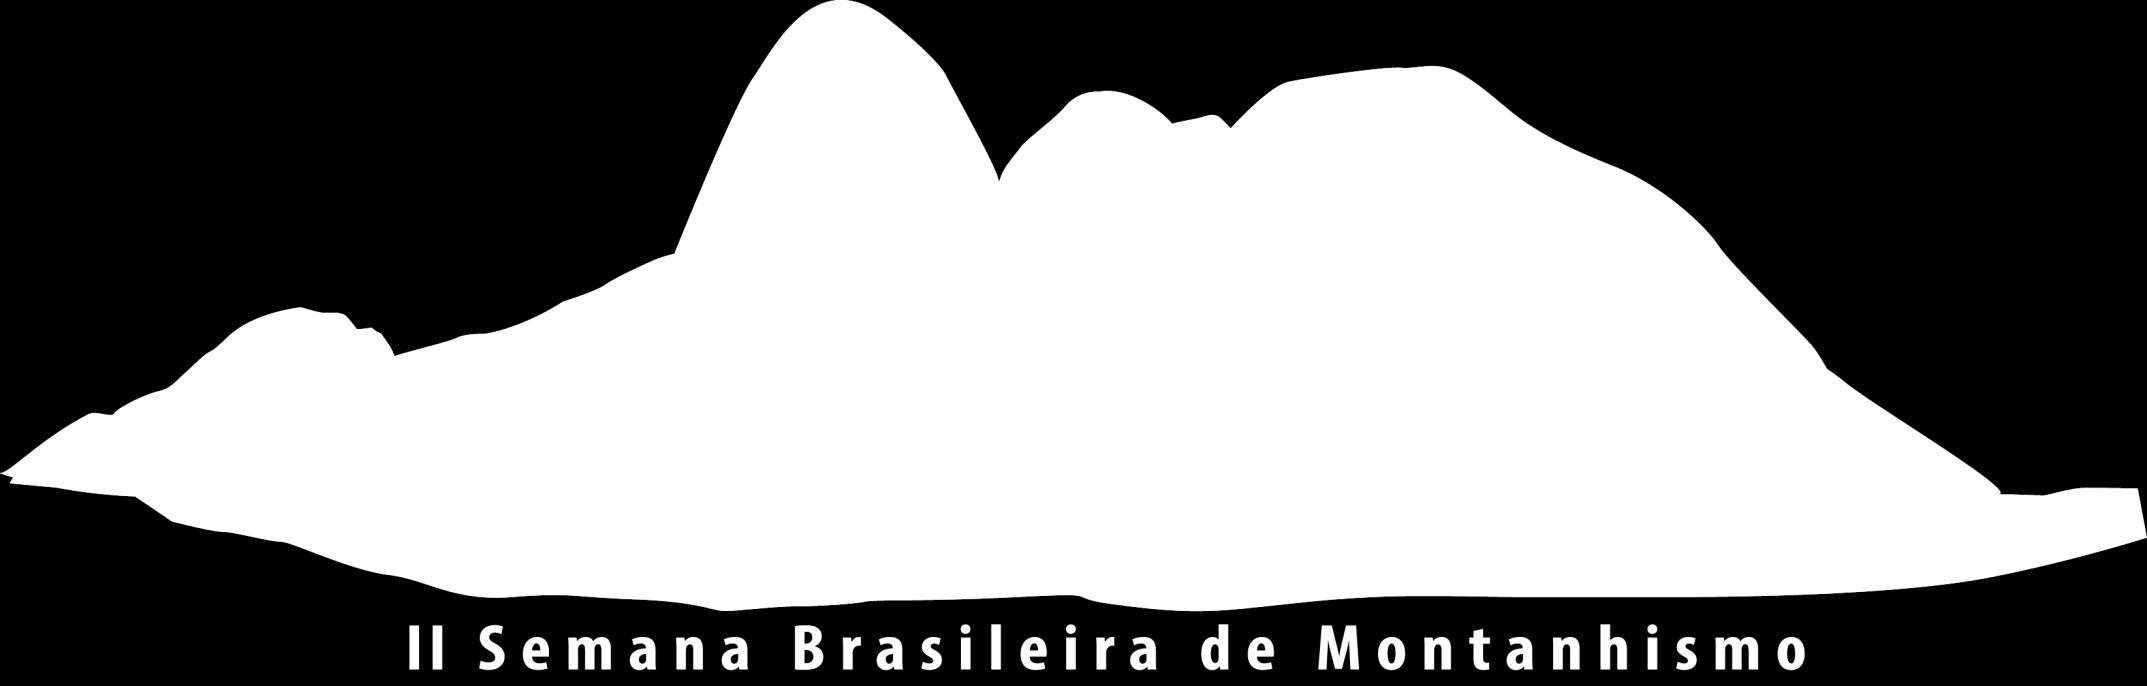 3º Congresso Brasileiro de Montanhismo e Escalada Tema: Montanhismo Brasileiro: